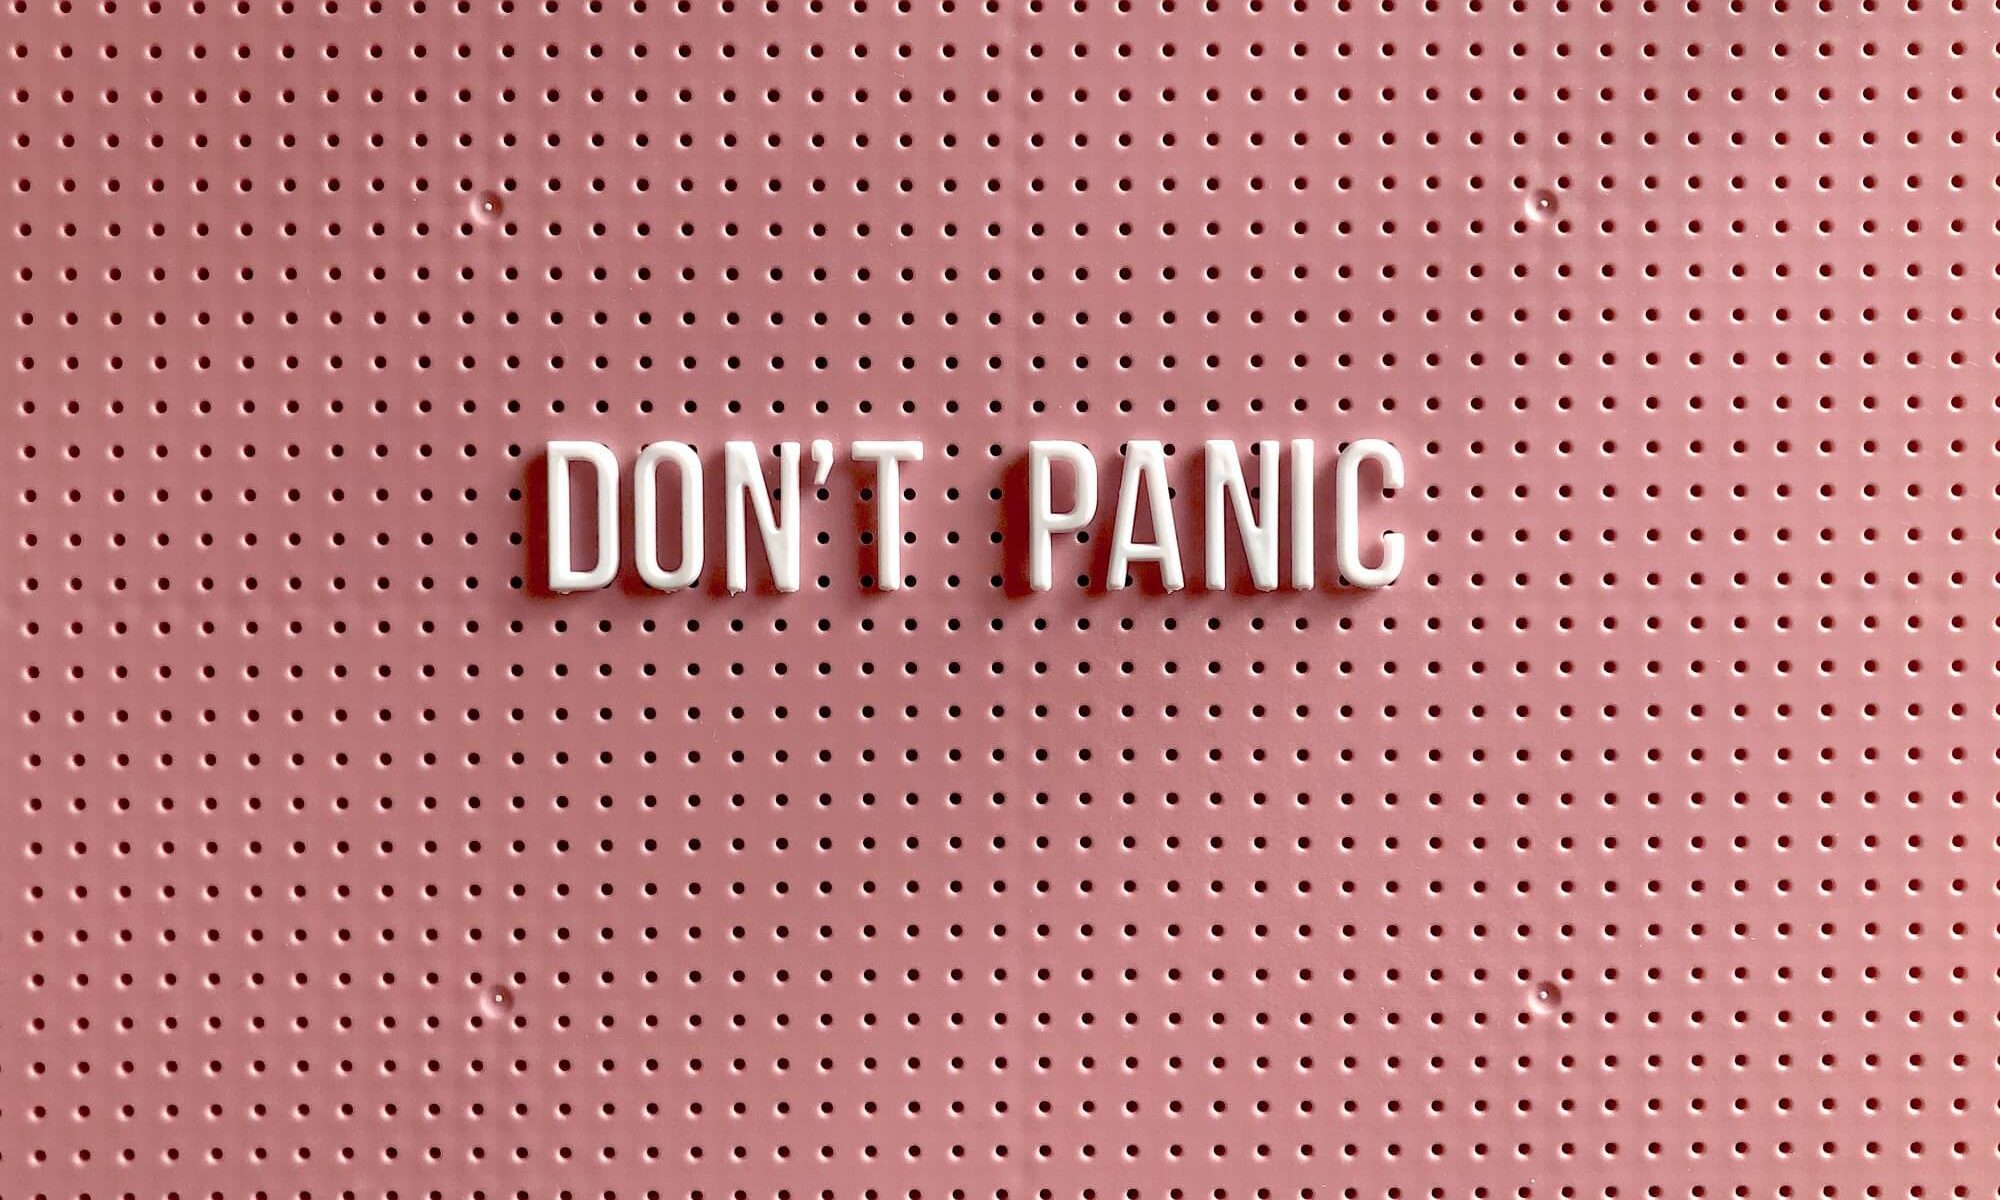 plaquinha de fundo rosa com o texto "don´t panic"